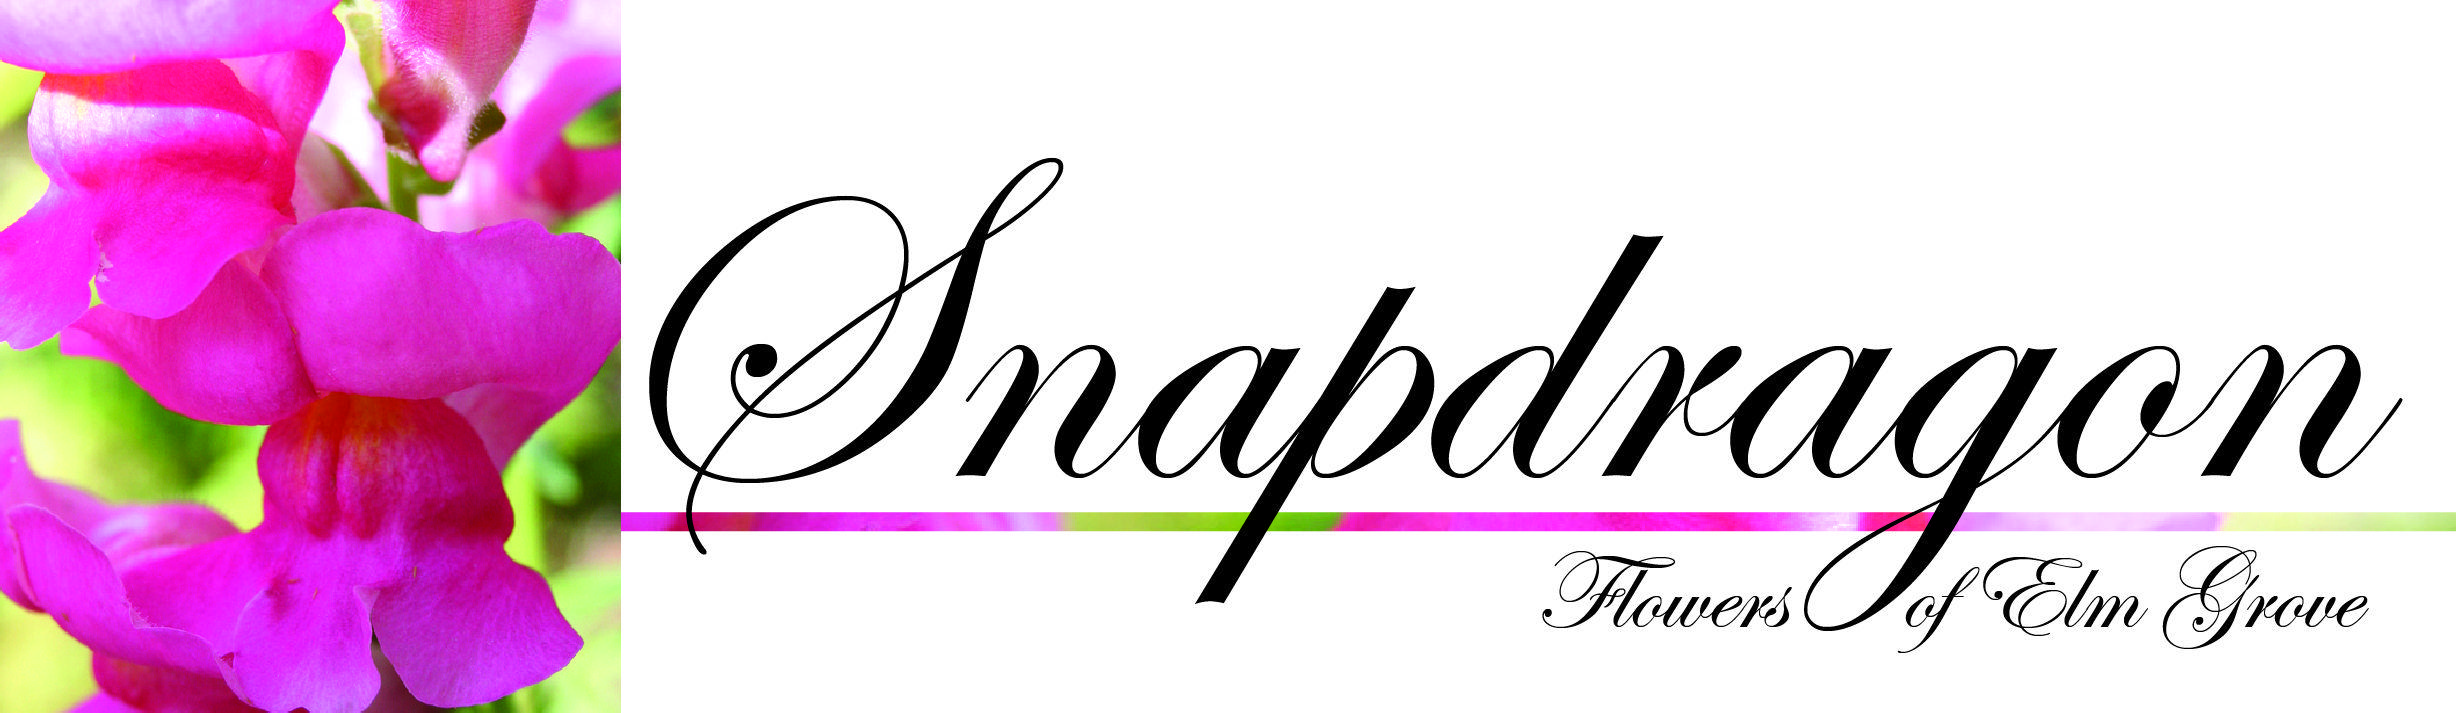 Snapdragon Flower Logo - Valentine's Day Gift Offer - Allô! Chocolat, Waukesha, WI